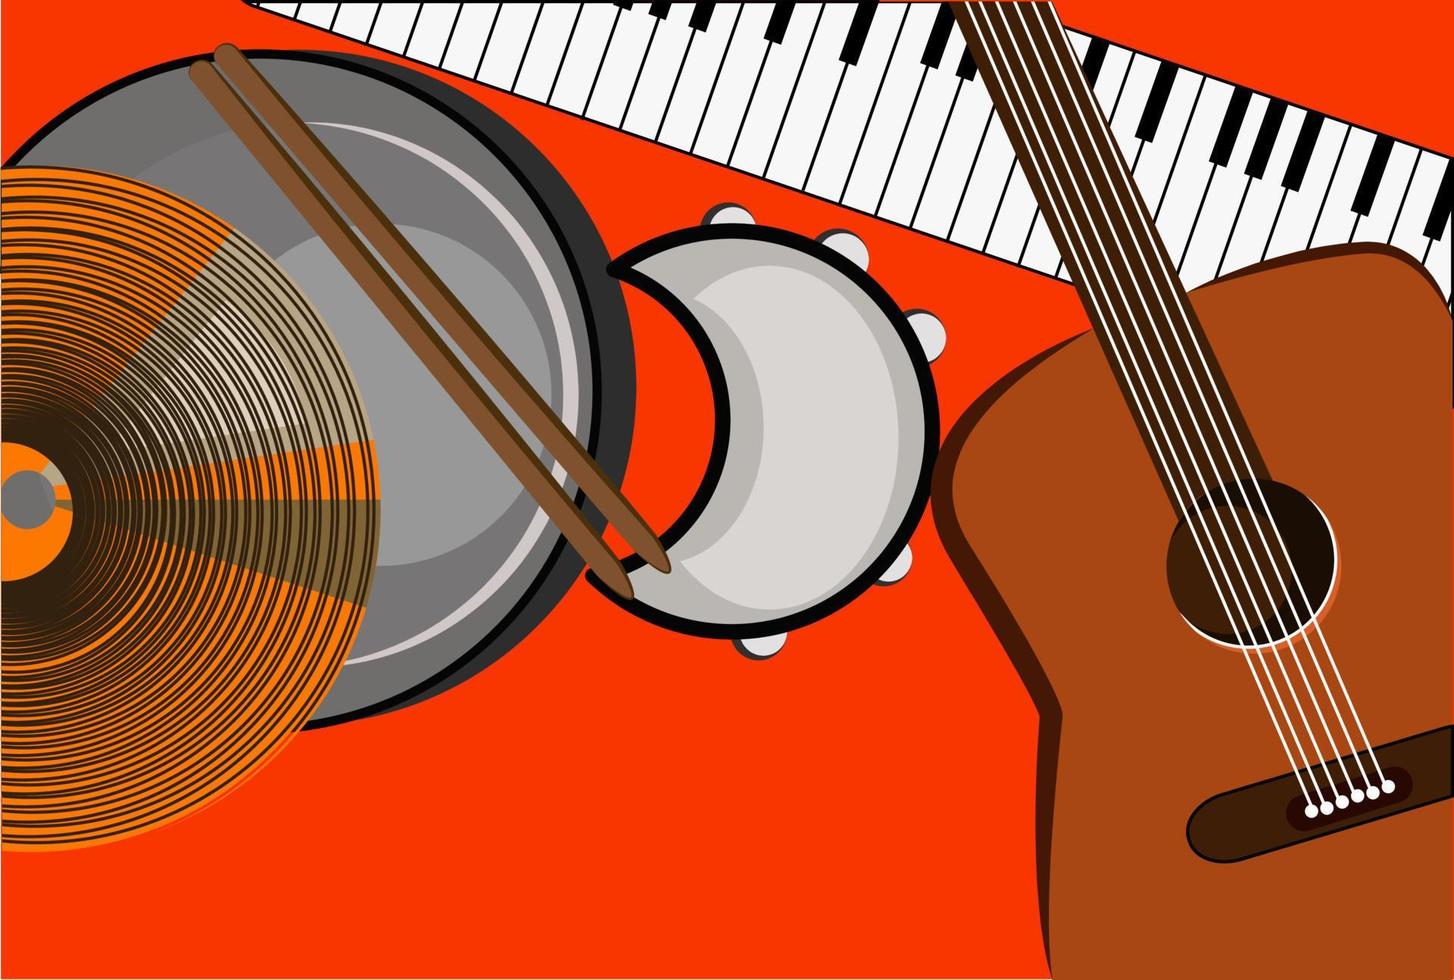 gitarr, illustration, vektor på vit bakgrund.